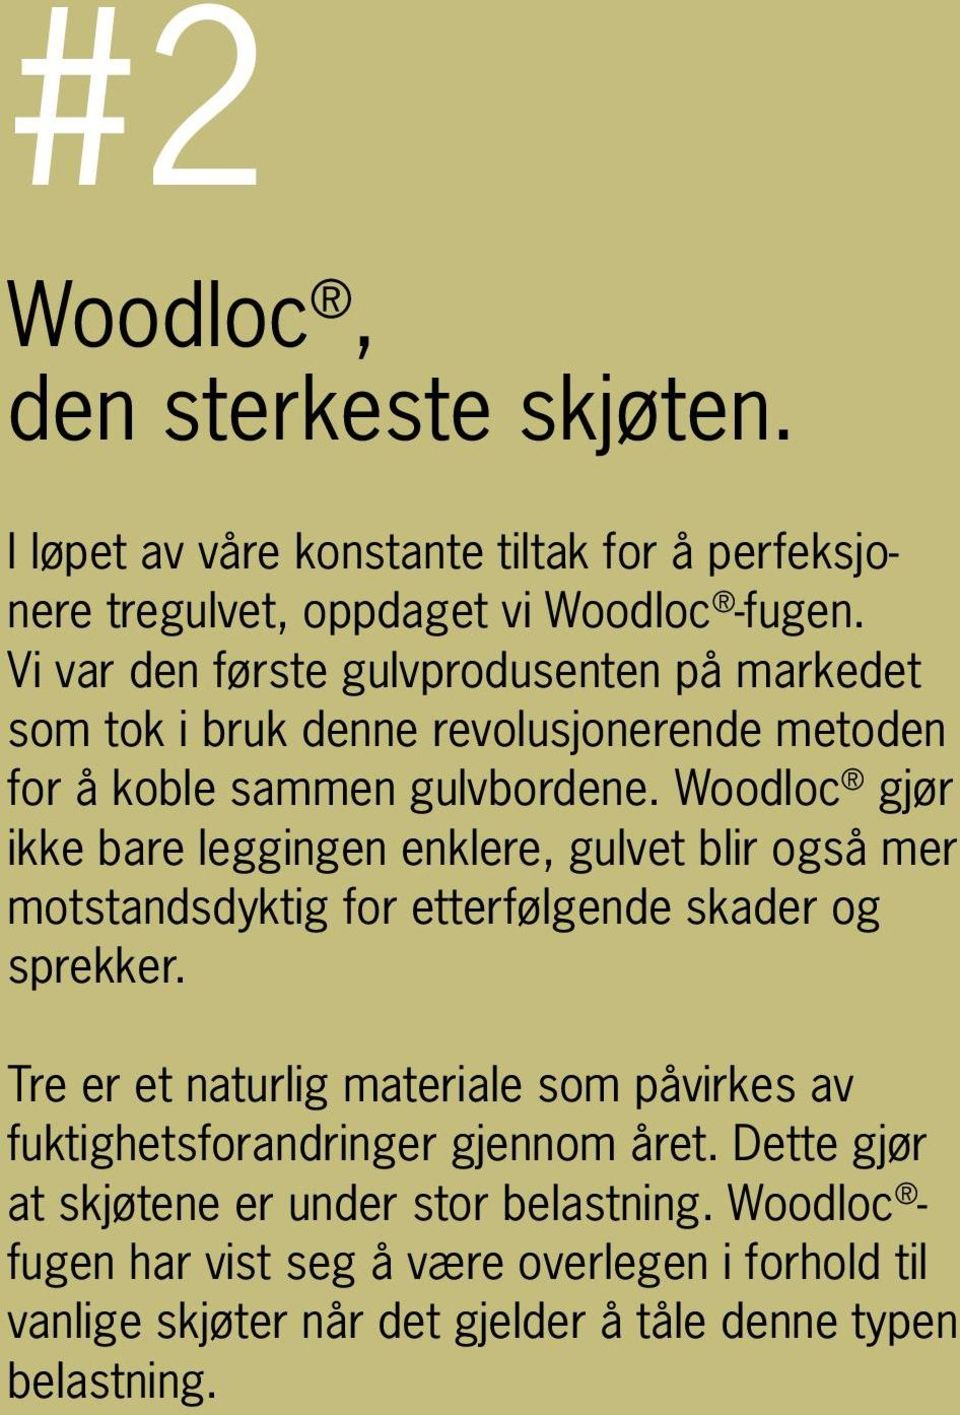 Woodloc gjør ikke bare leggingen enklere, gulvet blir også mer motstandsdyktig for etterfølgende skader og sprekker.